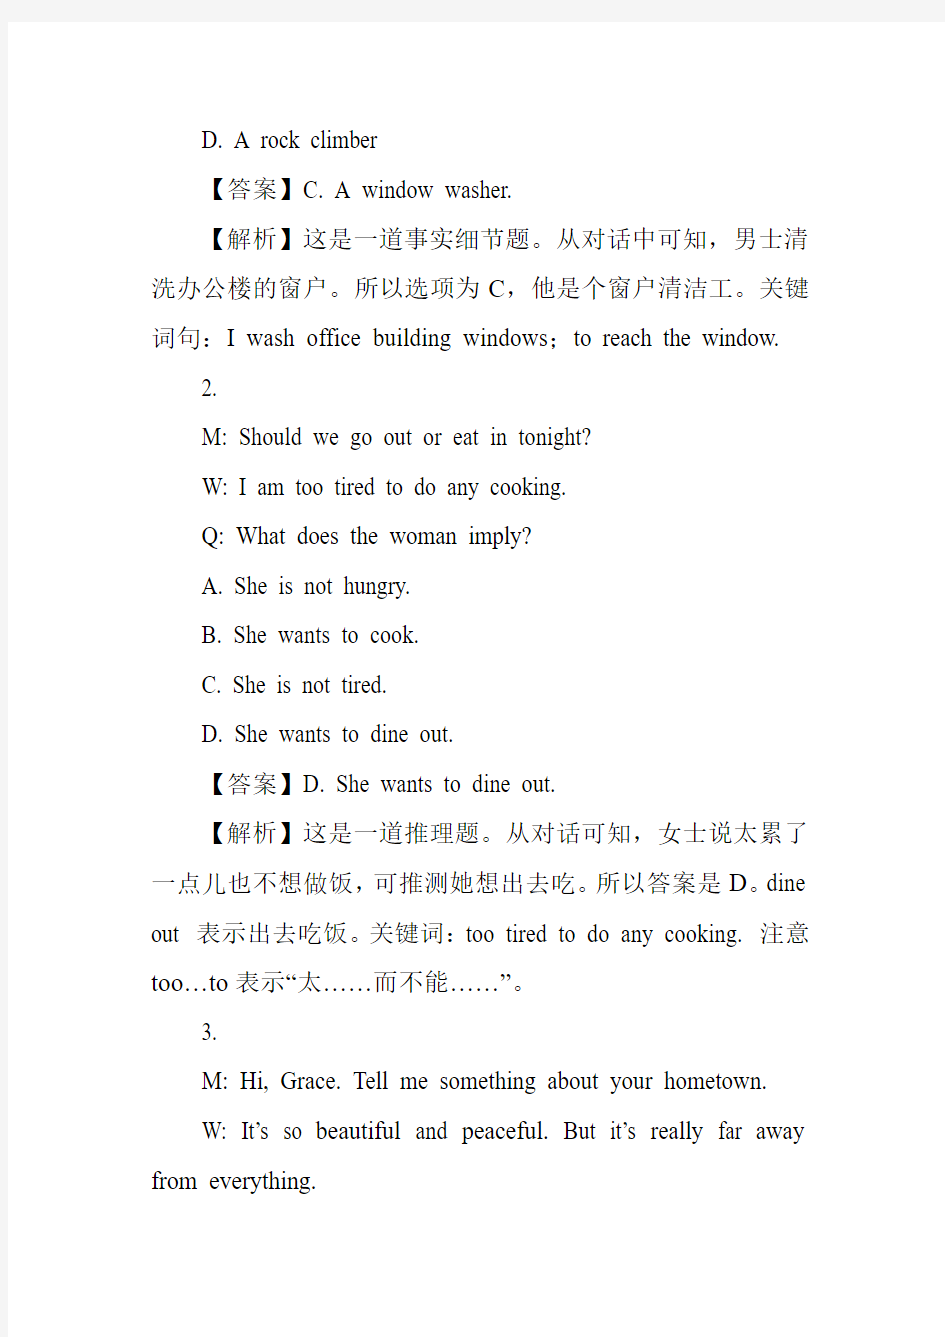 2013高考英语上海卷及解析